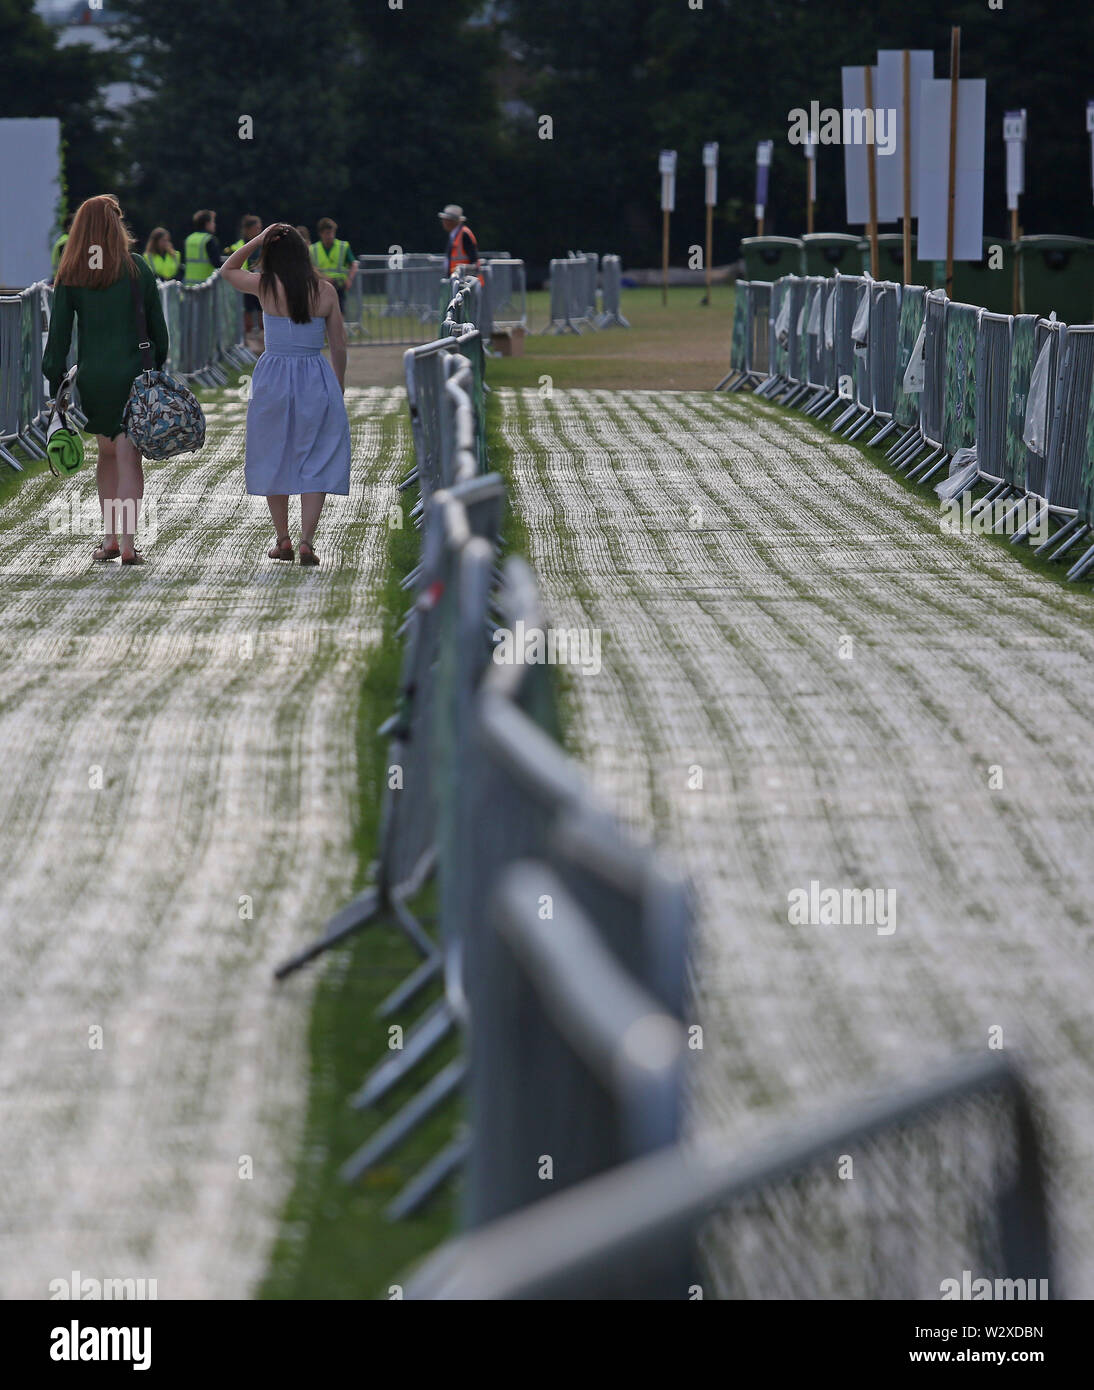 Am 10. Tag der Wimbledon Championships im All England Lawn Tennis and Croquet Club, London, stehen Menschen in der Schlange im Wimbledon Park. Stockfoto